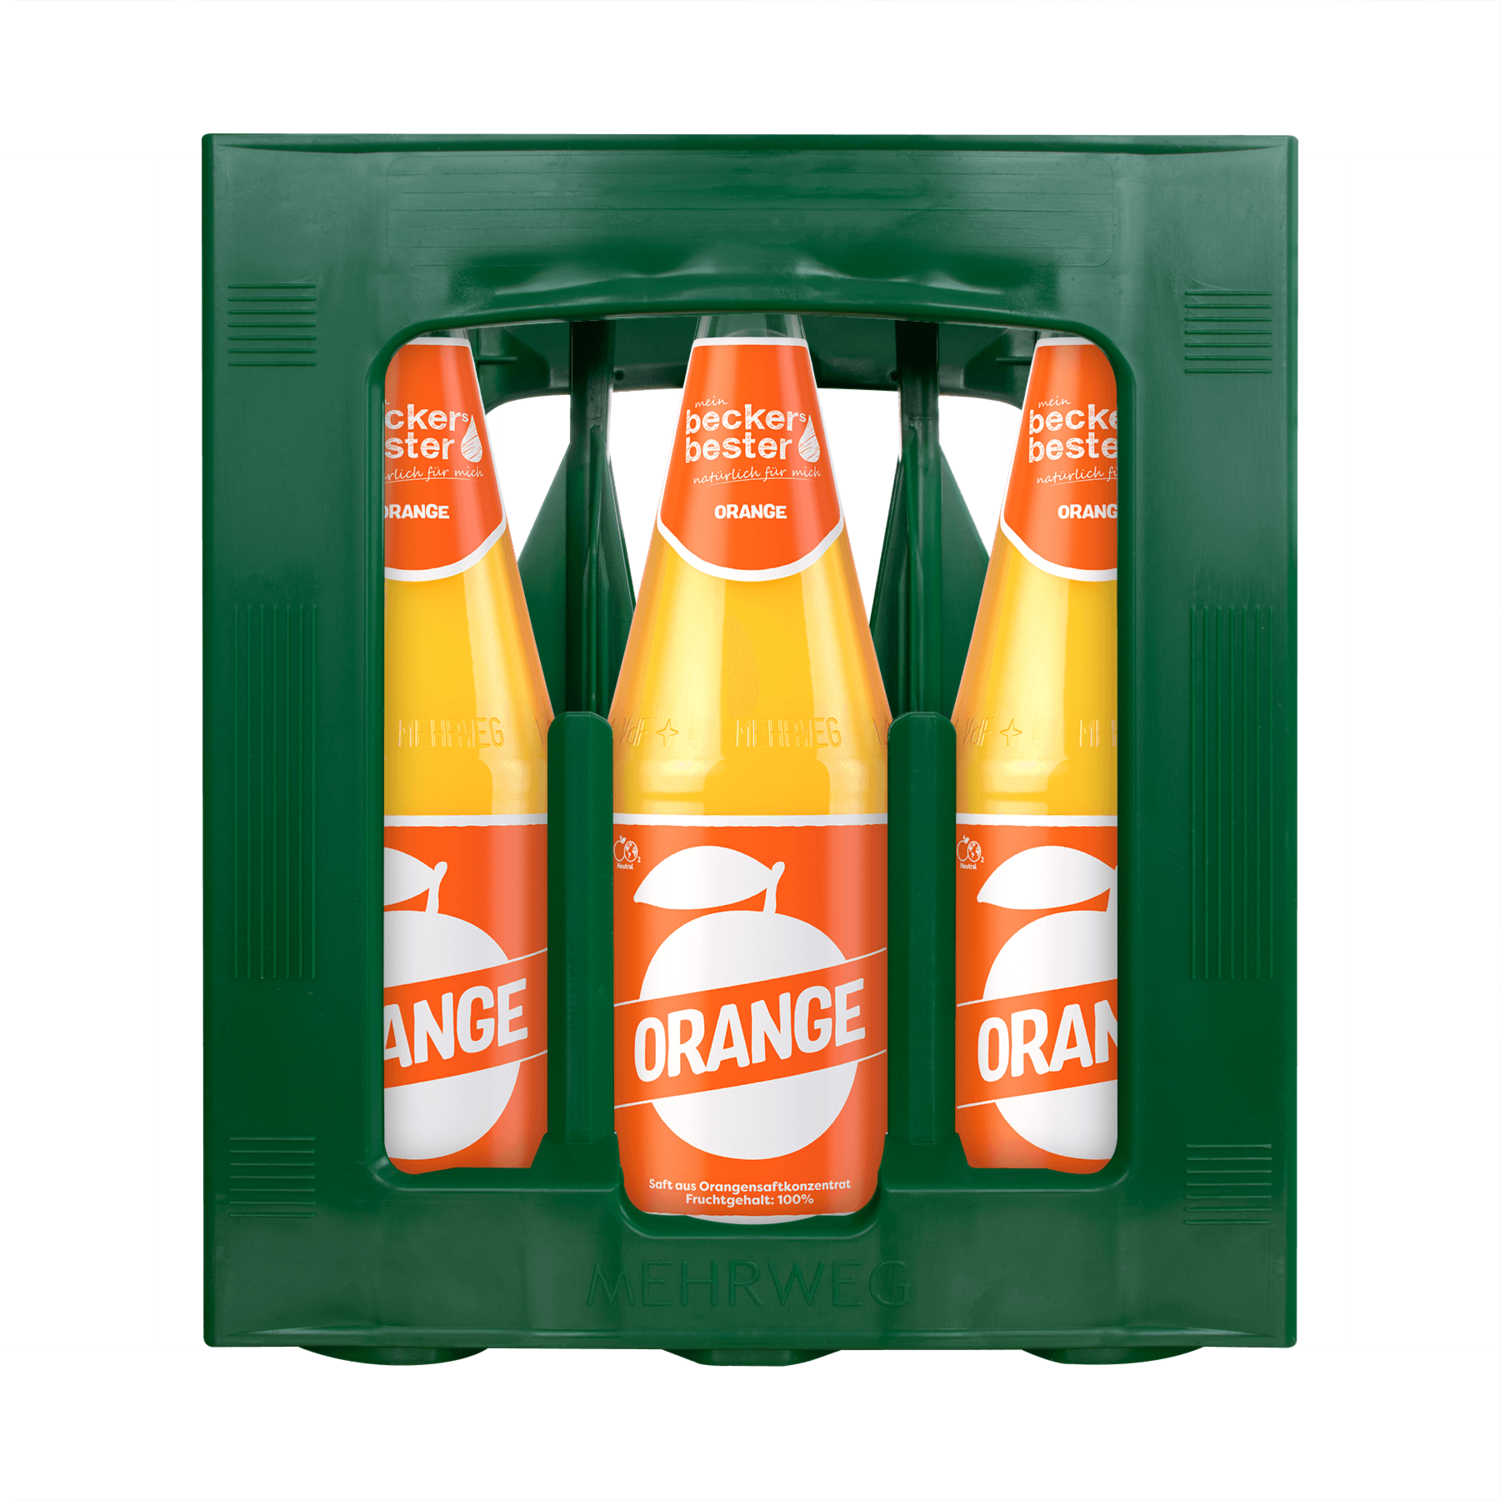 Beckers Bester Orange 100%
(6x 1,0l FL Glas 15,99 € inkl. MwSt. zzgl. Pfand)